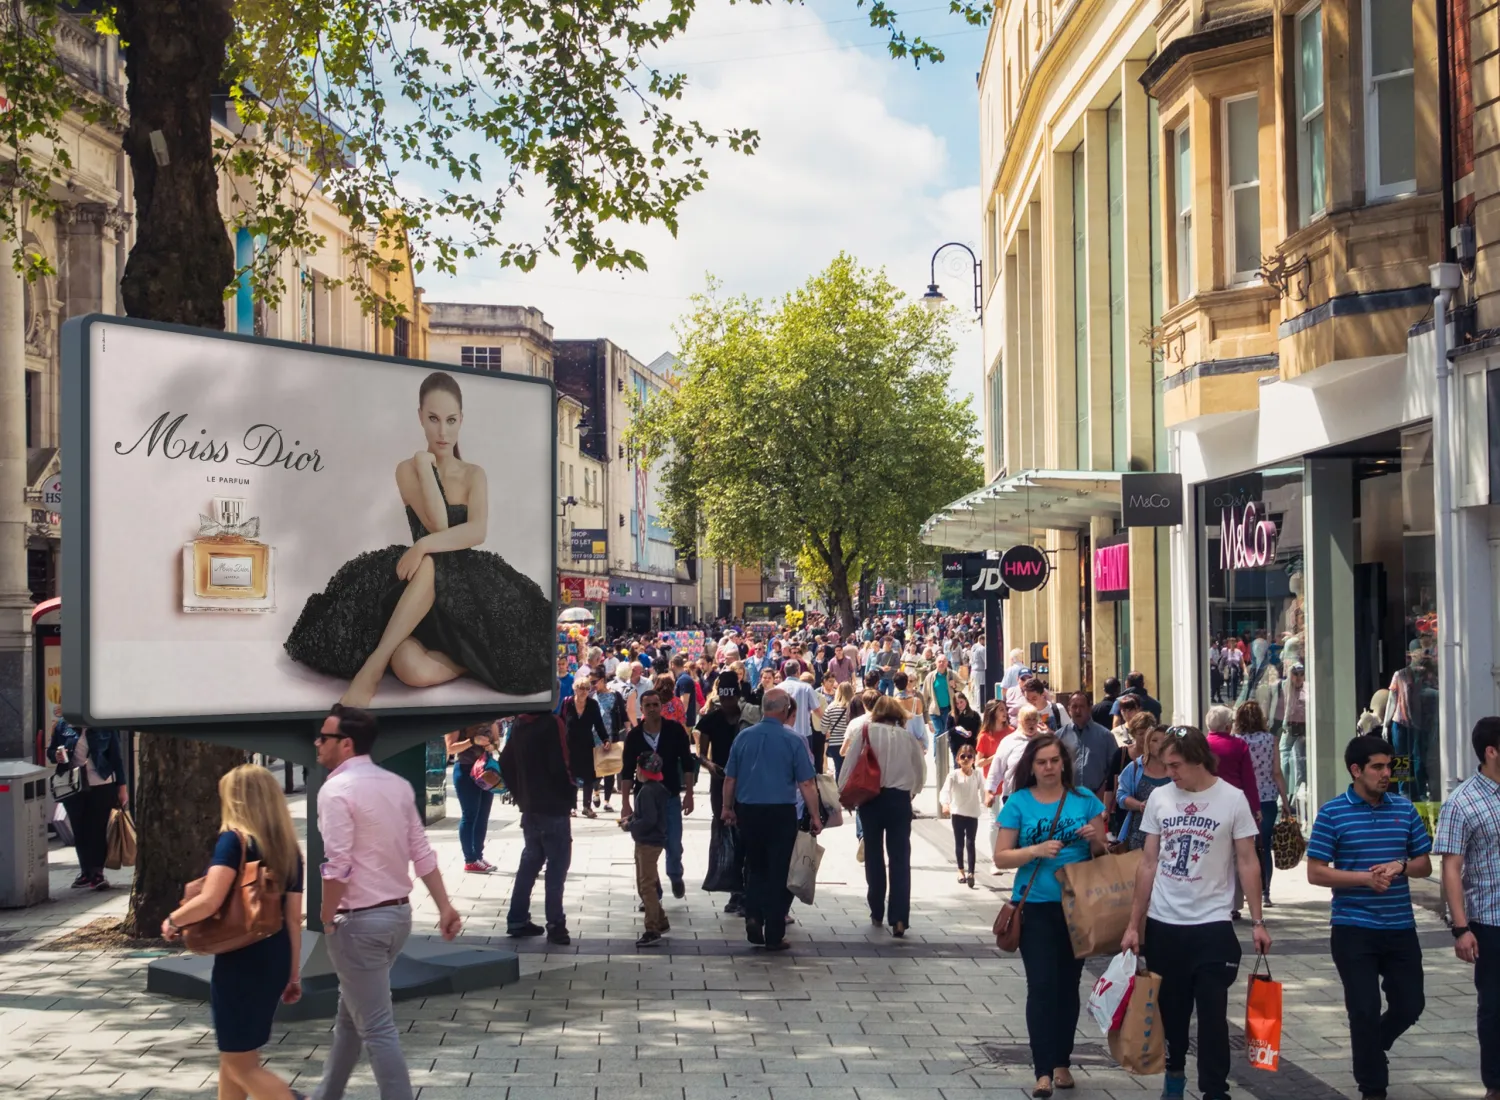 Mobiel billboard met reclame voor parfum er op